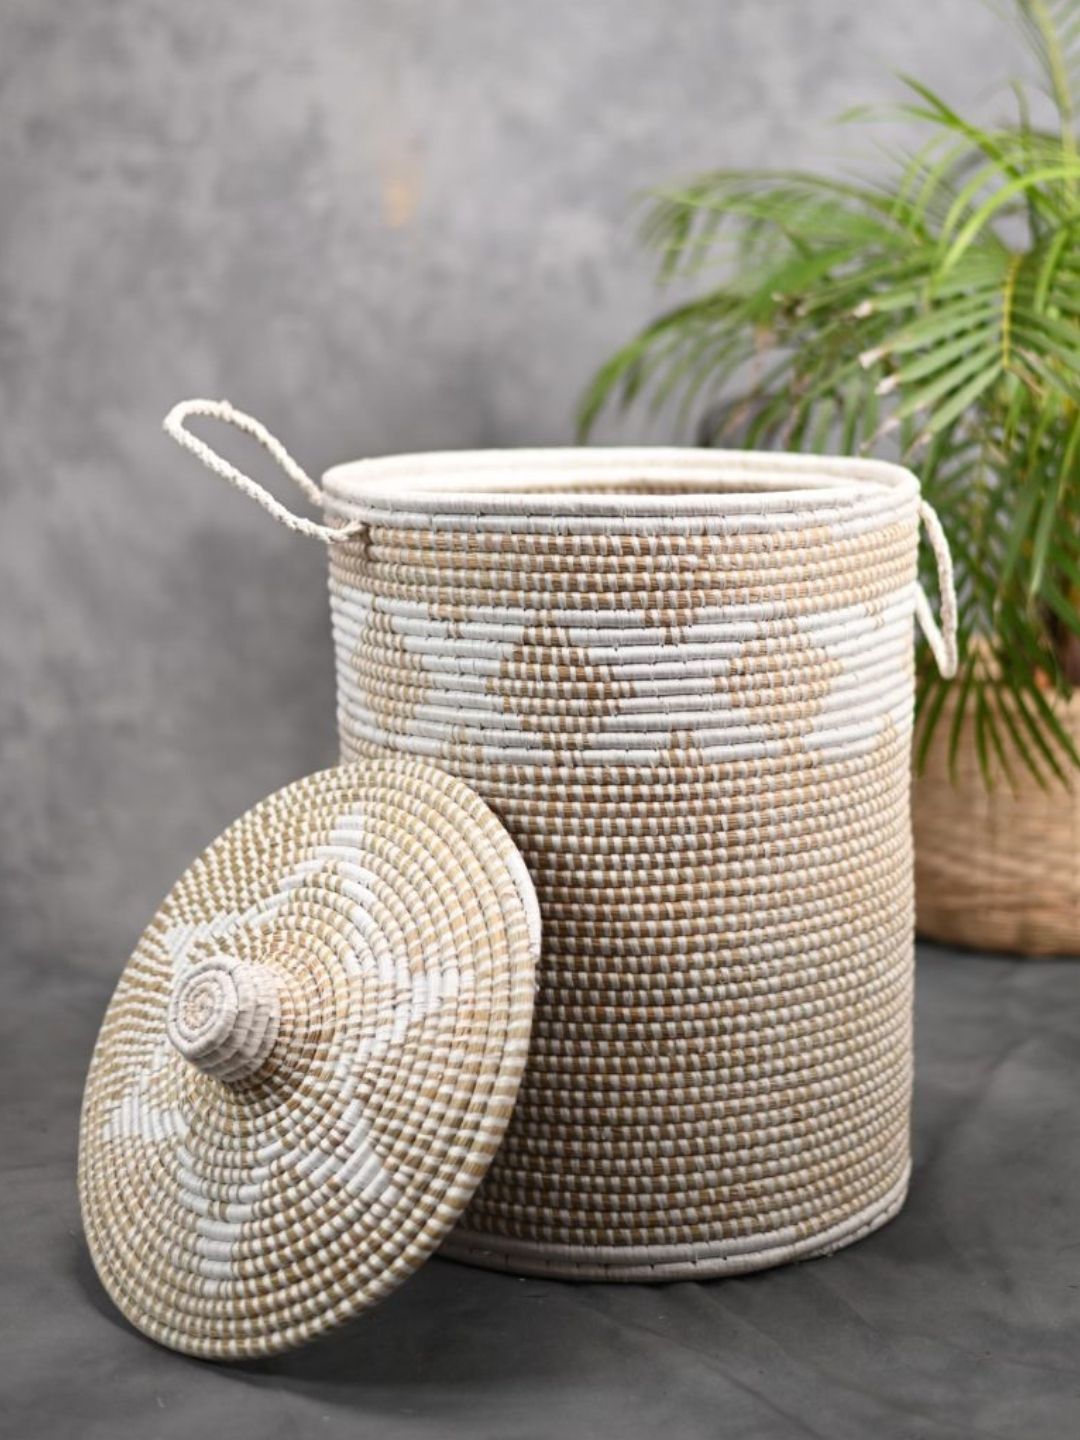 Handmade Moonj Grass Laundry Basket - White-Cross